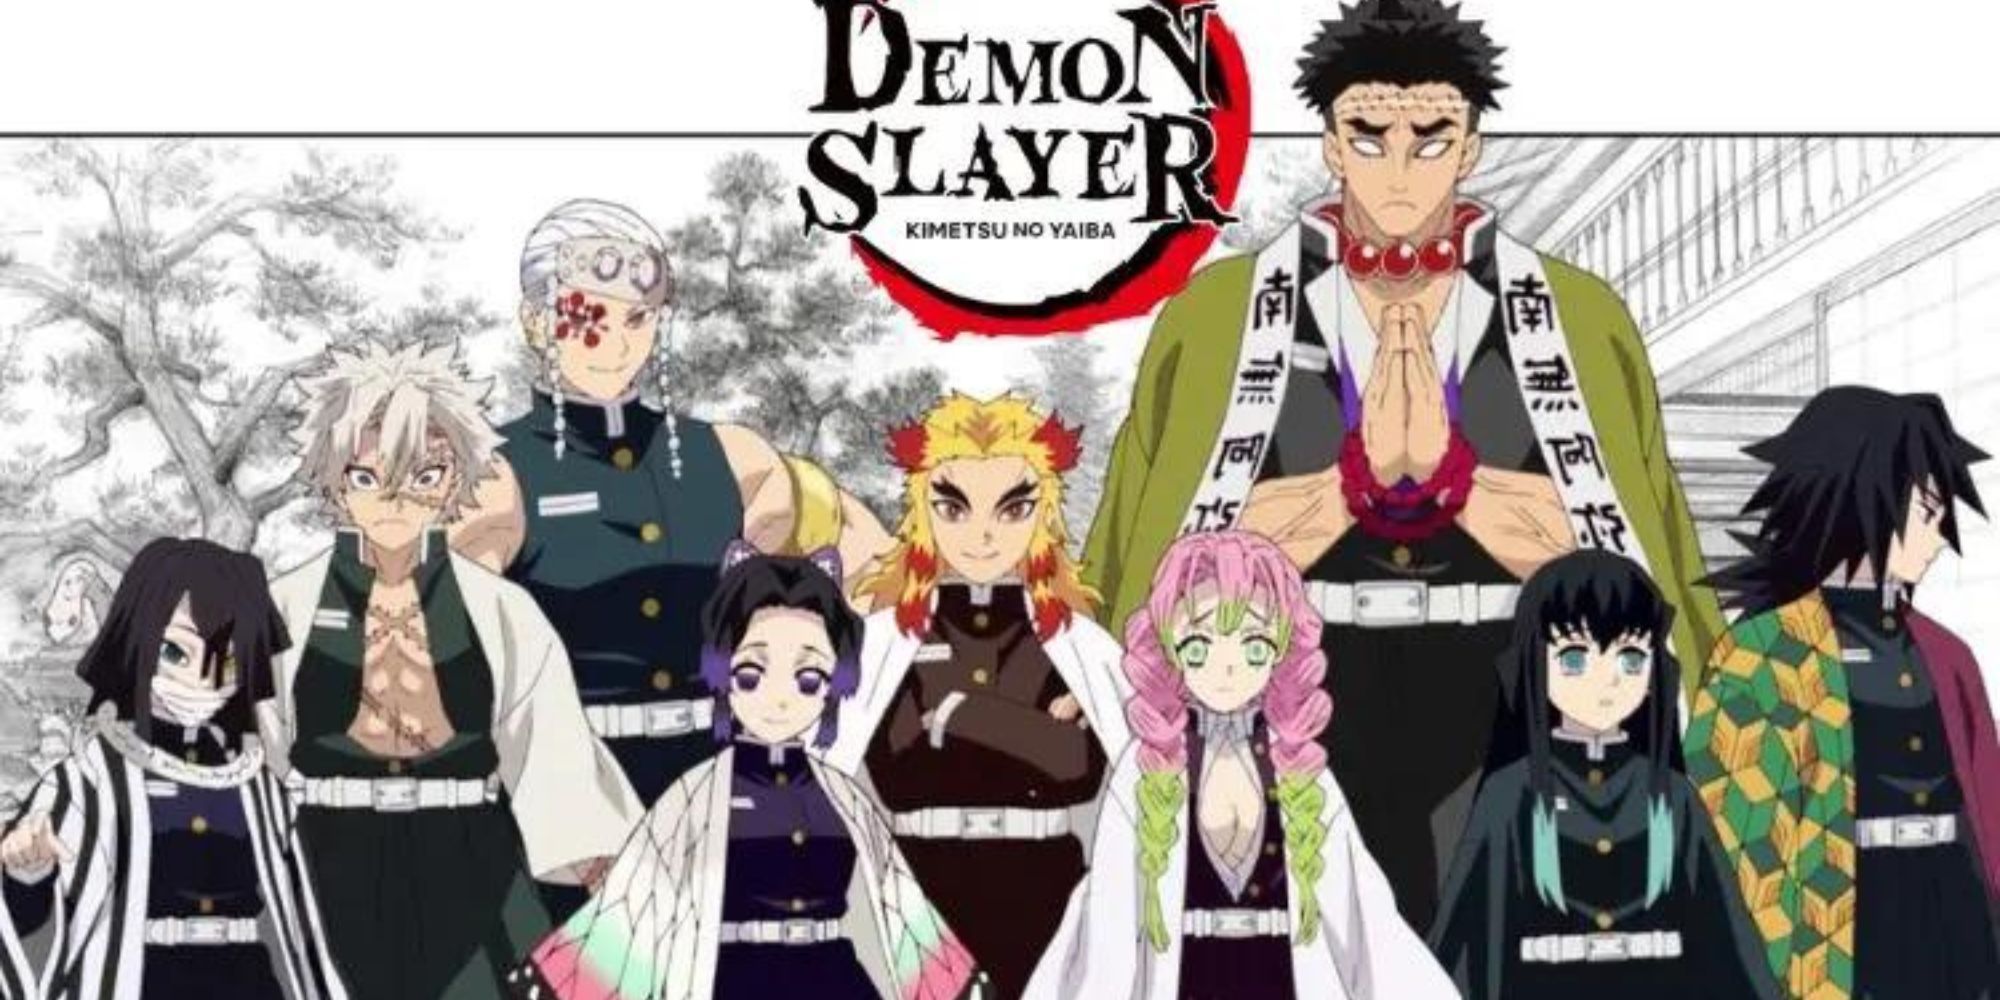 Demon Slayer Season 4 date: Demon Slayer season 4 release date